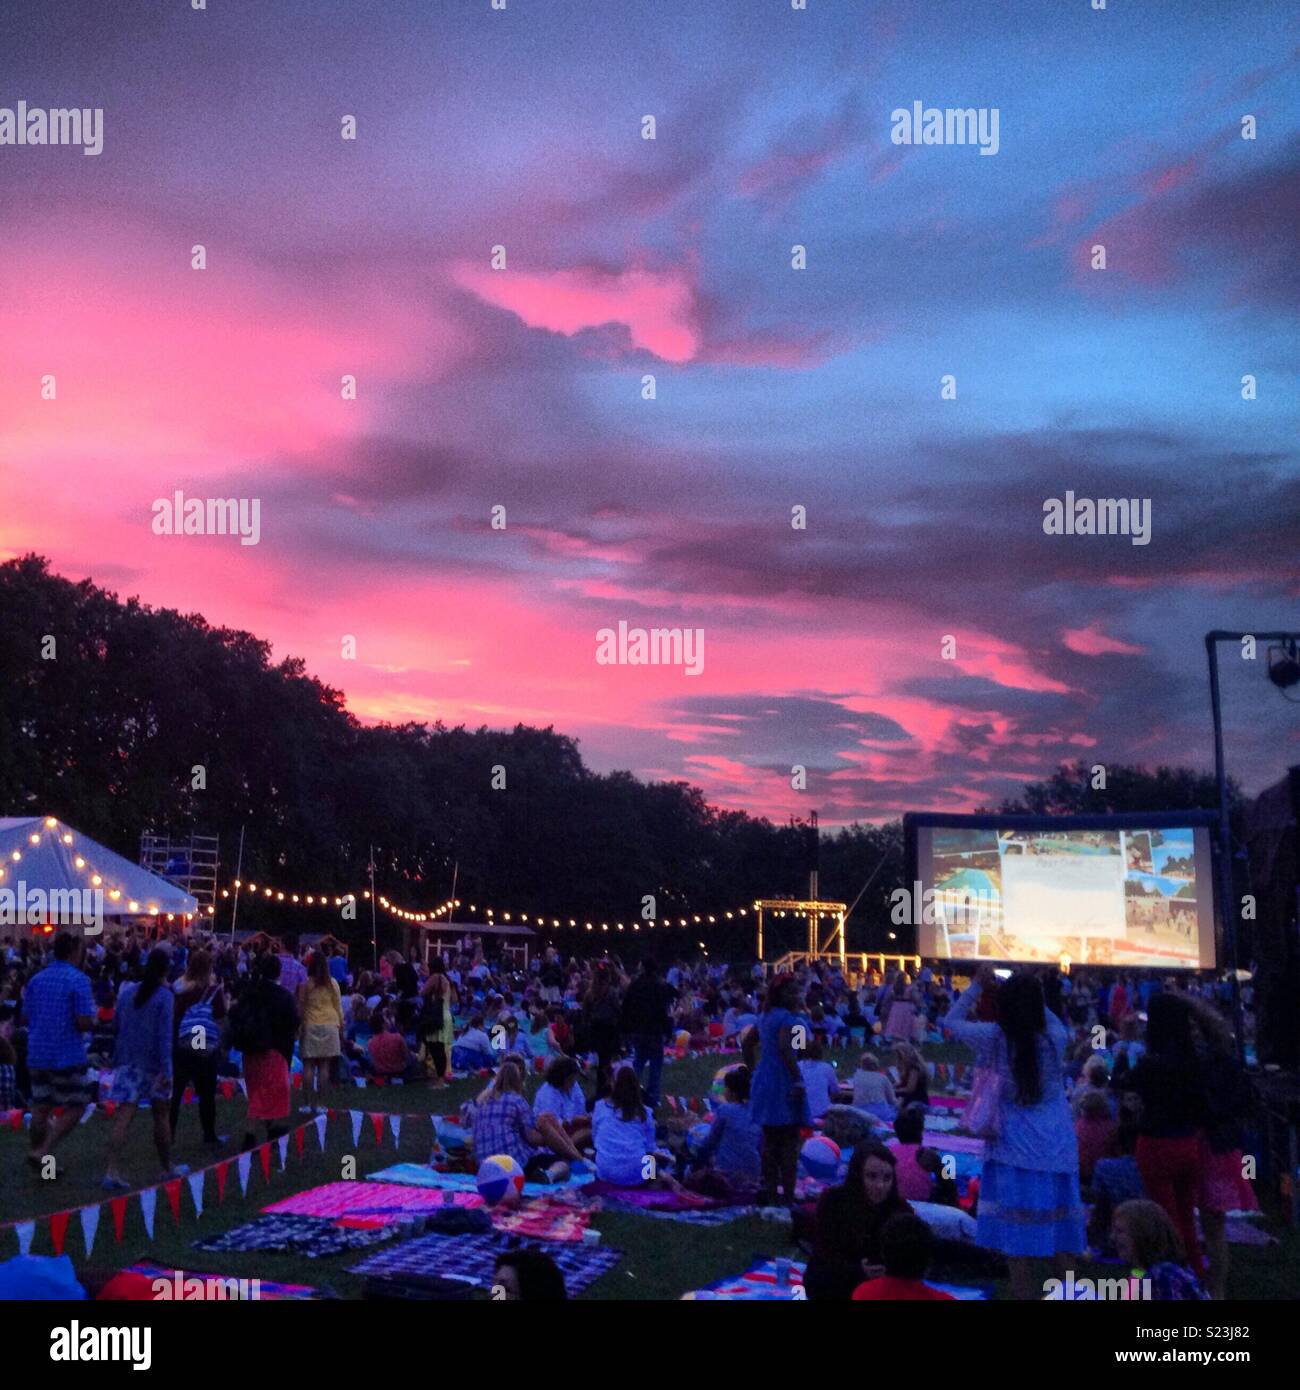 Cinéma en plein air avec ciel coucher de soleil rose Banque D'Images